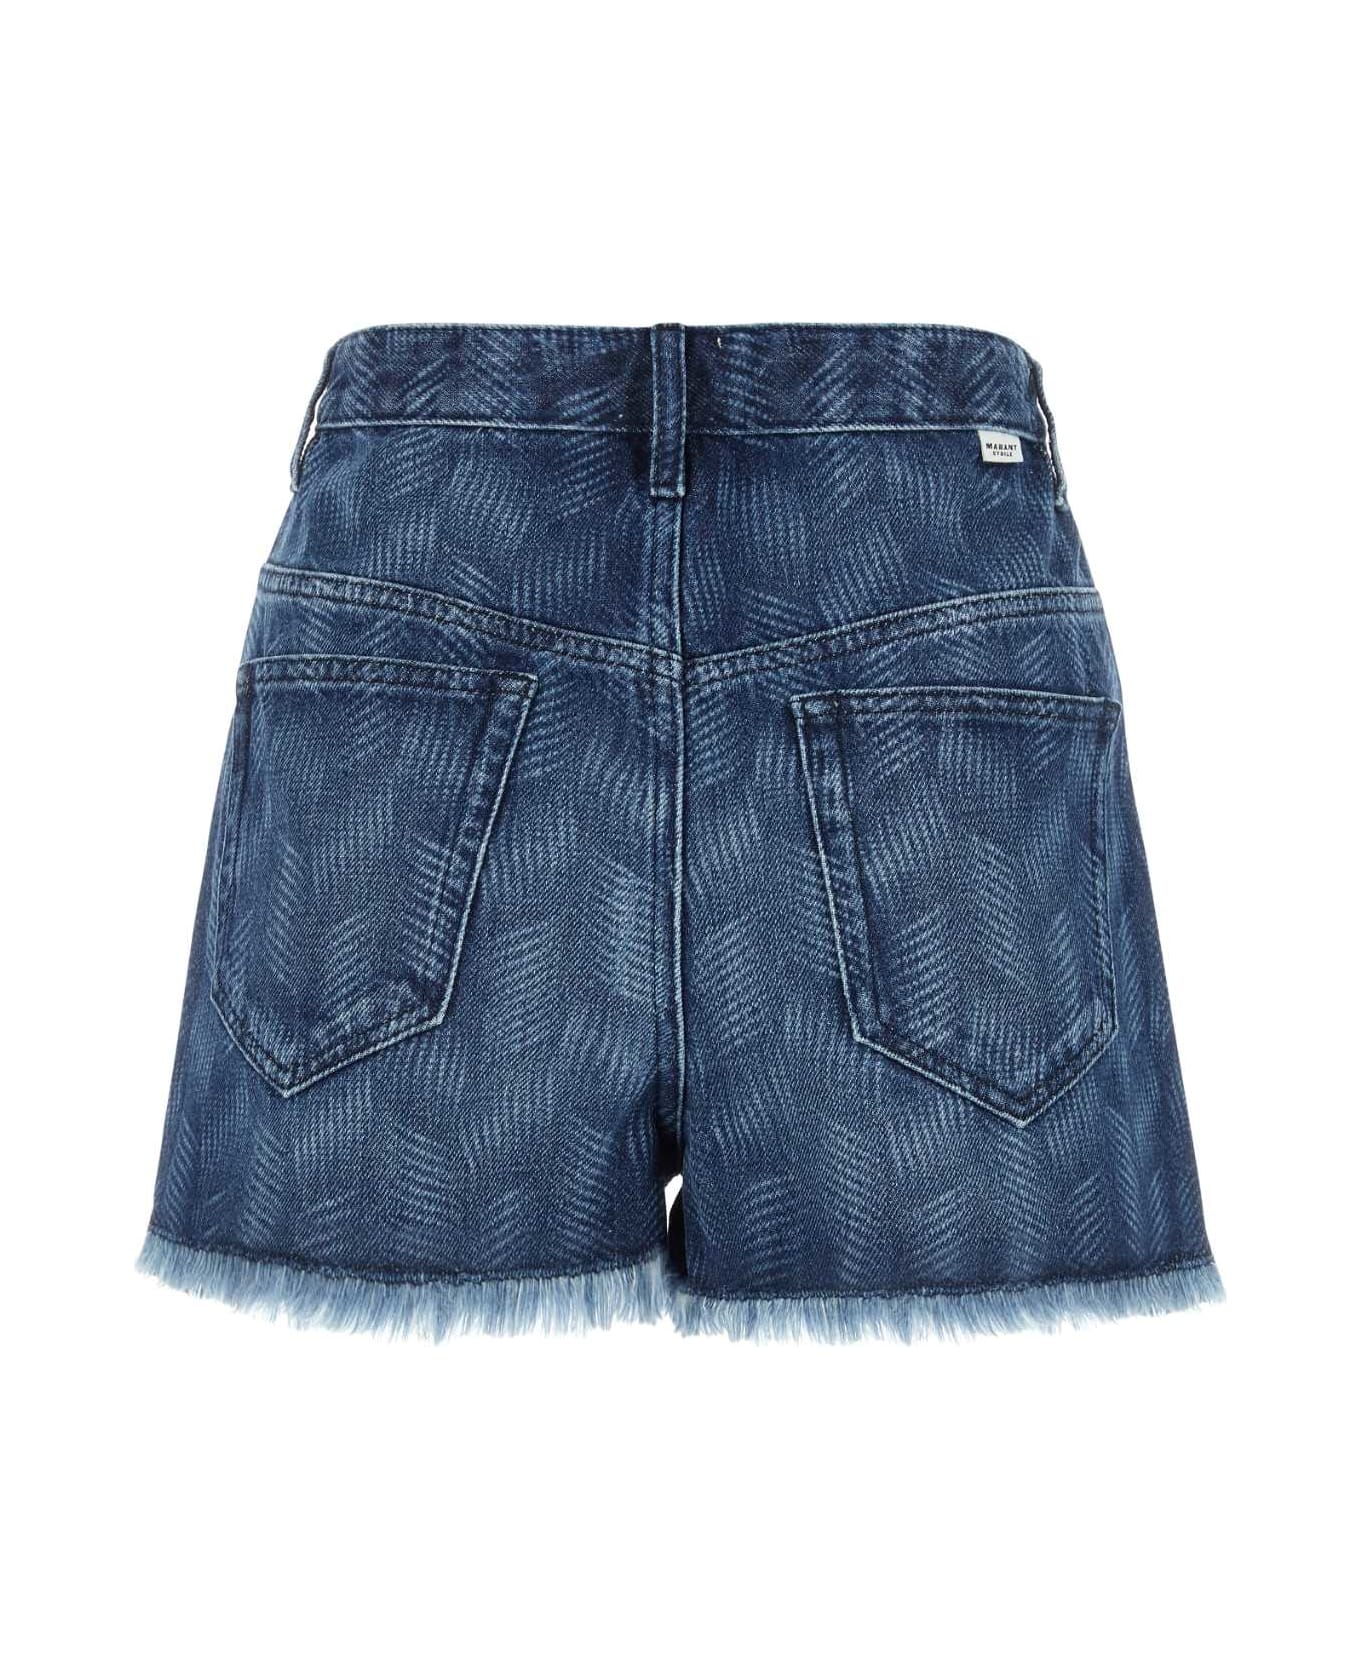 Marant Étoile Denim Lesia Shorts - Blue ショートパンツ